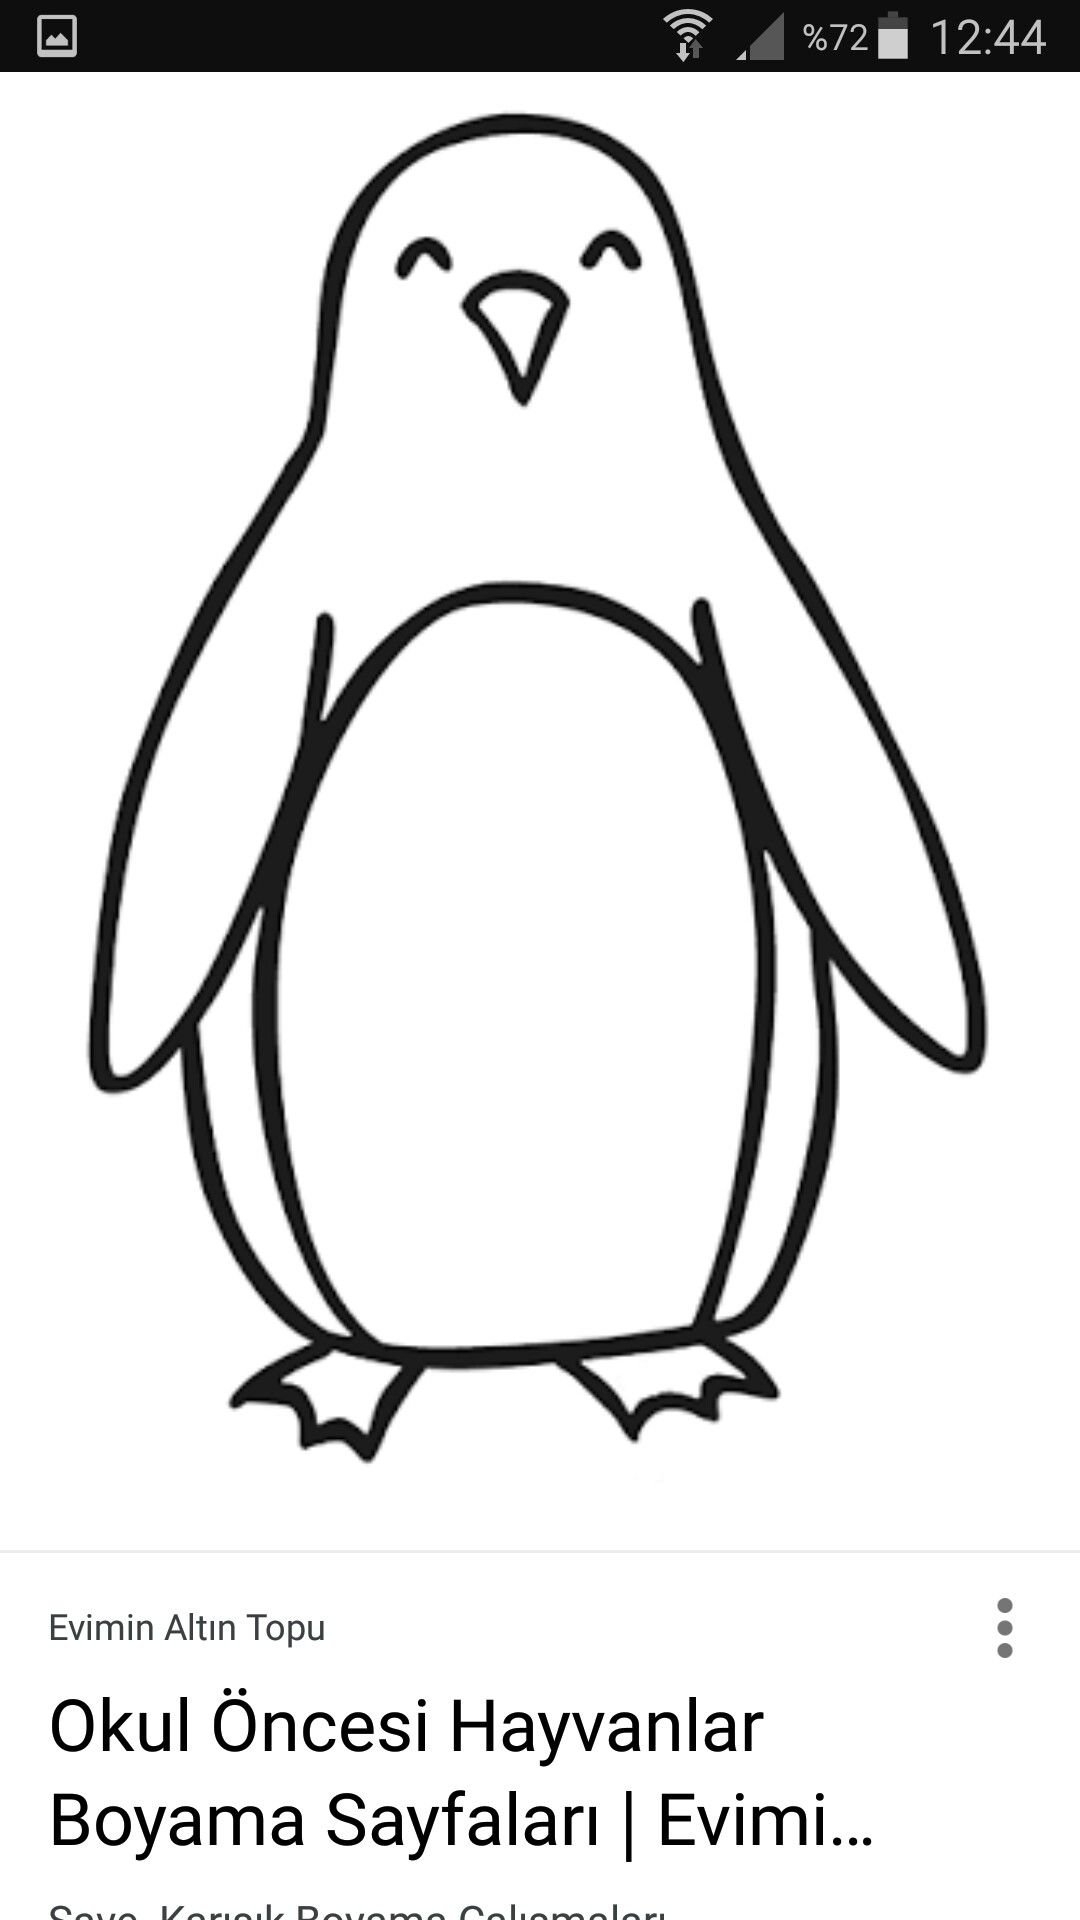 Пингвин трафарет